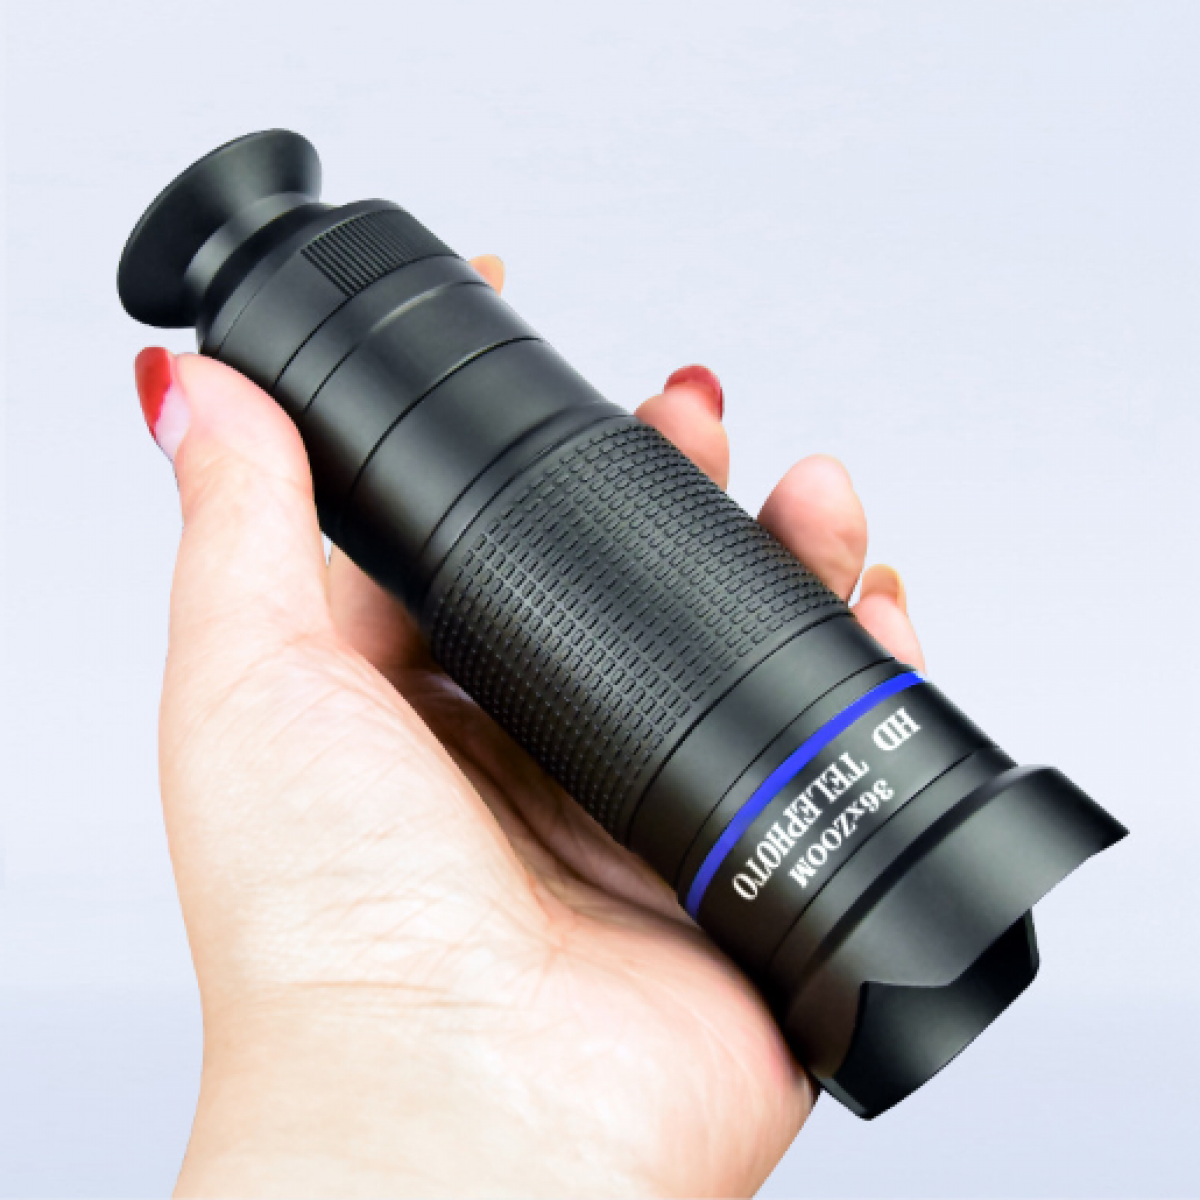 mm, HD-Teleobjektiv für Fernglas 36x, 36X Handy 7,7 INF